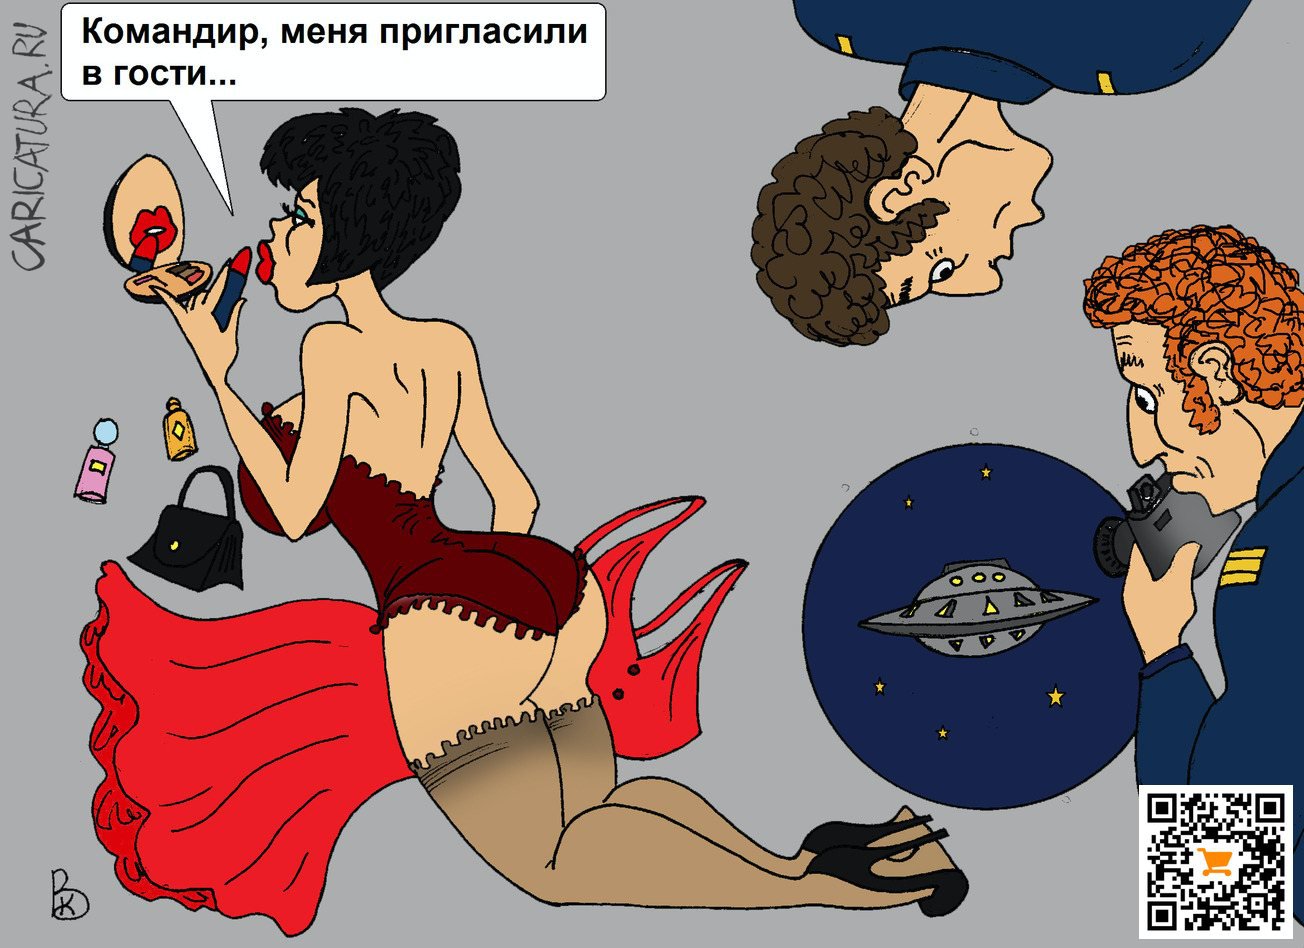 Карикатура "В гости", Валерий Каненков